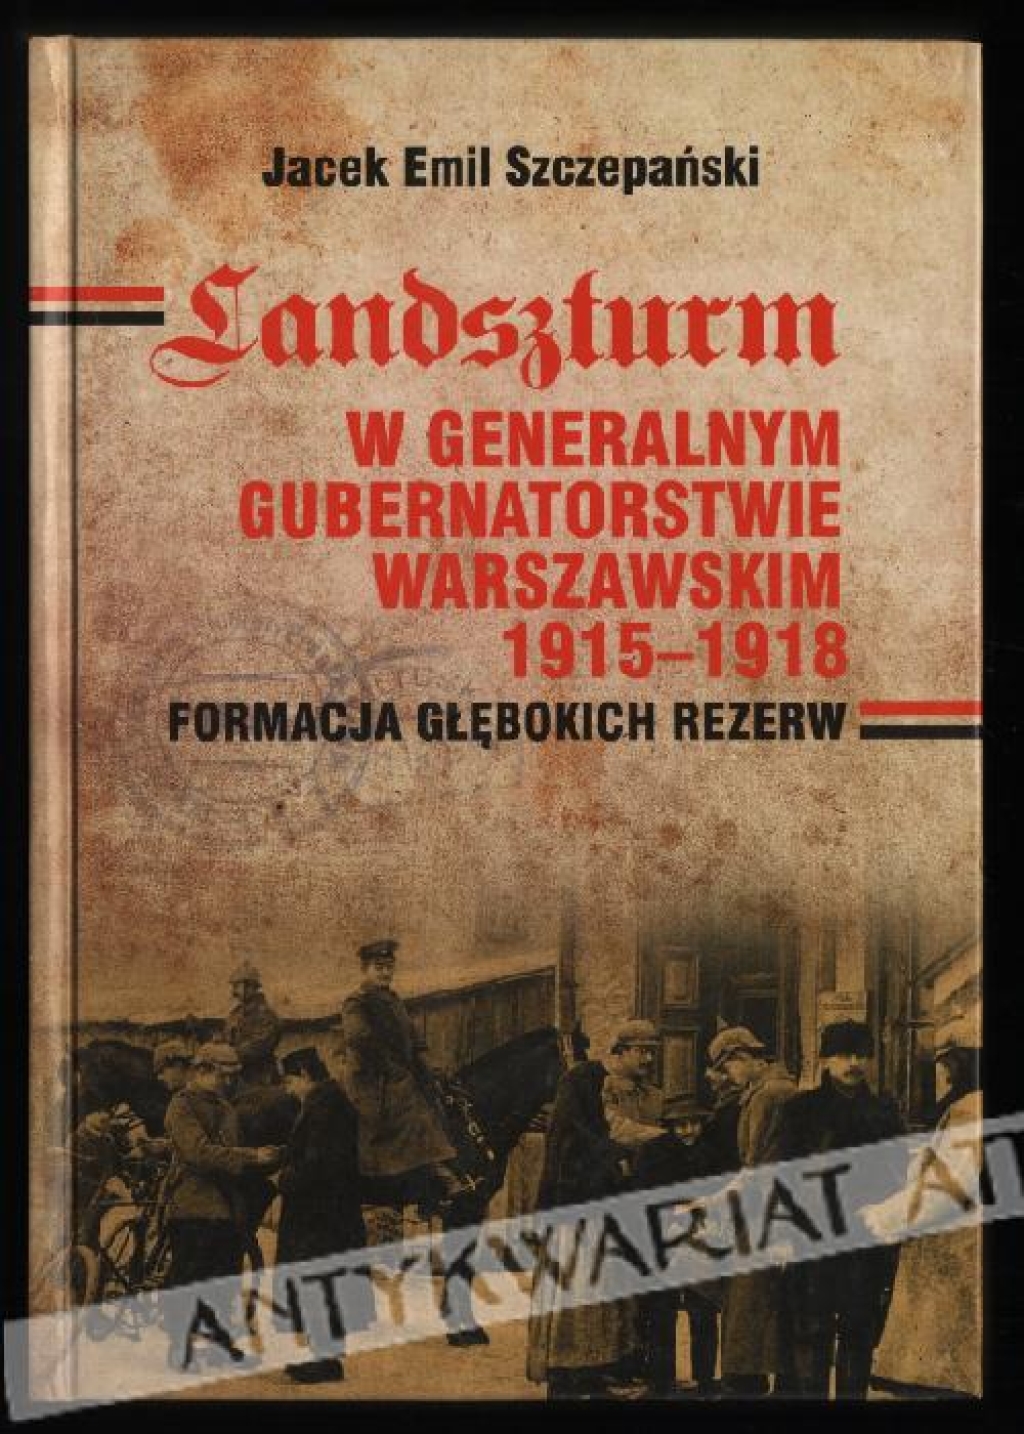 Landszturm w Generalnym Gubernatorstwie Warszawskim 1915-1918. Formacja głębokich rezerw